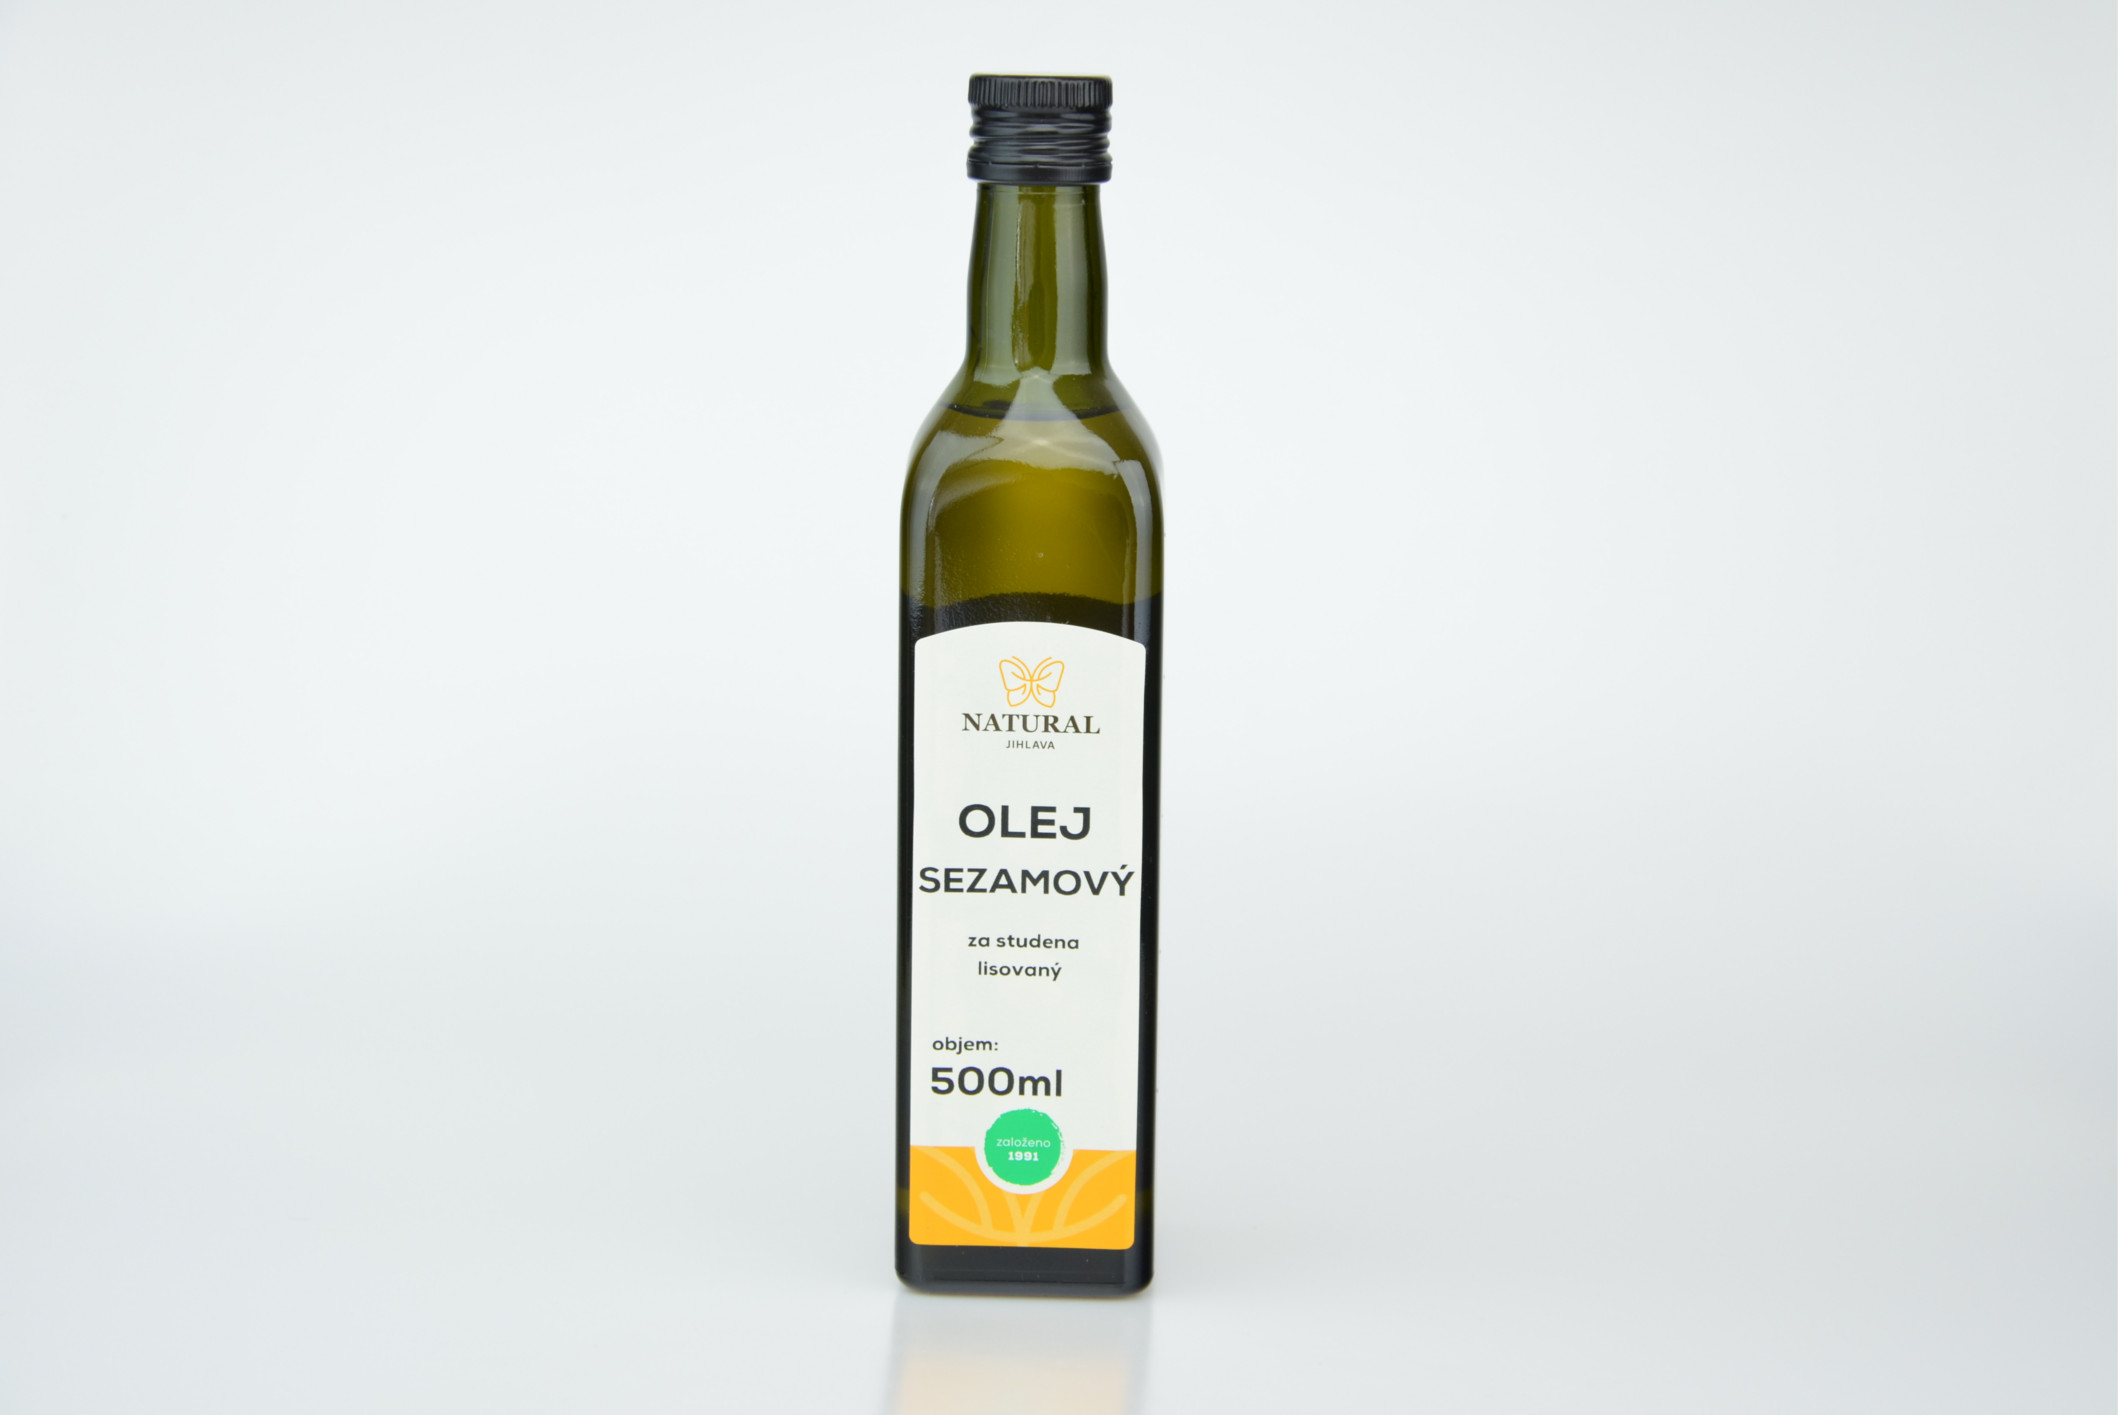 Olej sezamový za studena lisovaný NATURAL 500 ml